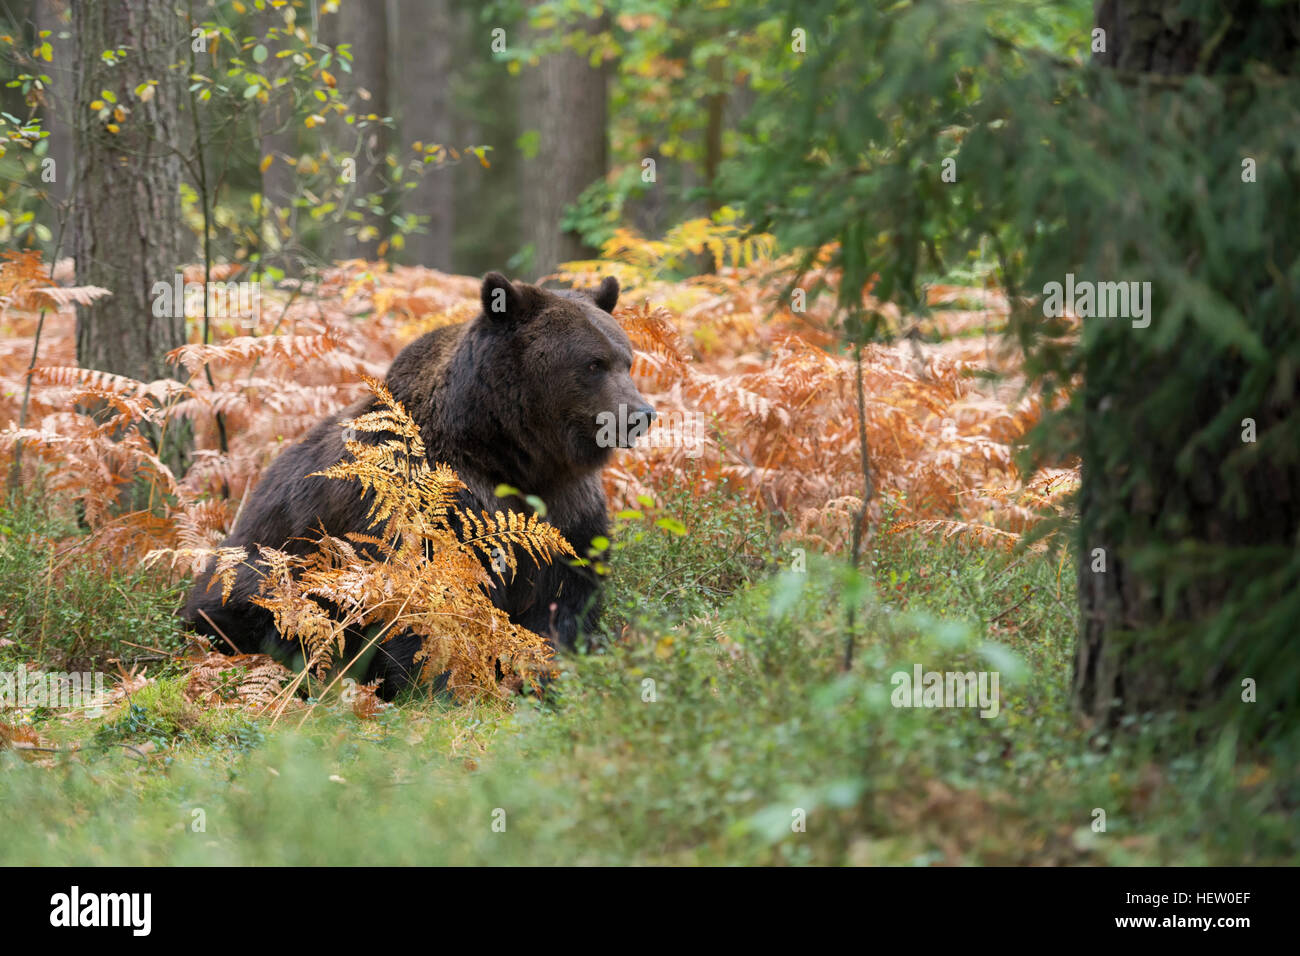 Unione orso bruno / Braunbaer ( Ursus arctos ) seduta nel sottobosco di una foresta, in colori autunnali fern. Foto Stock